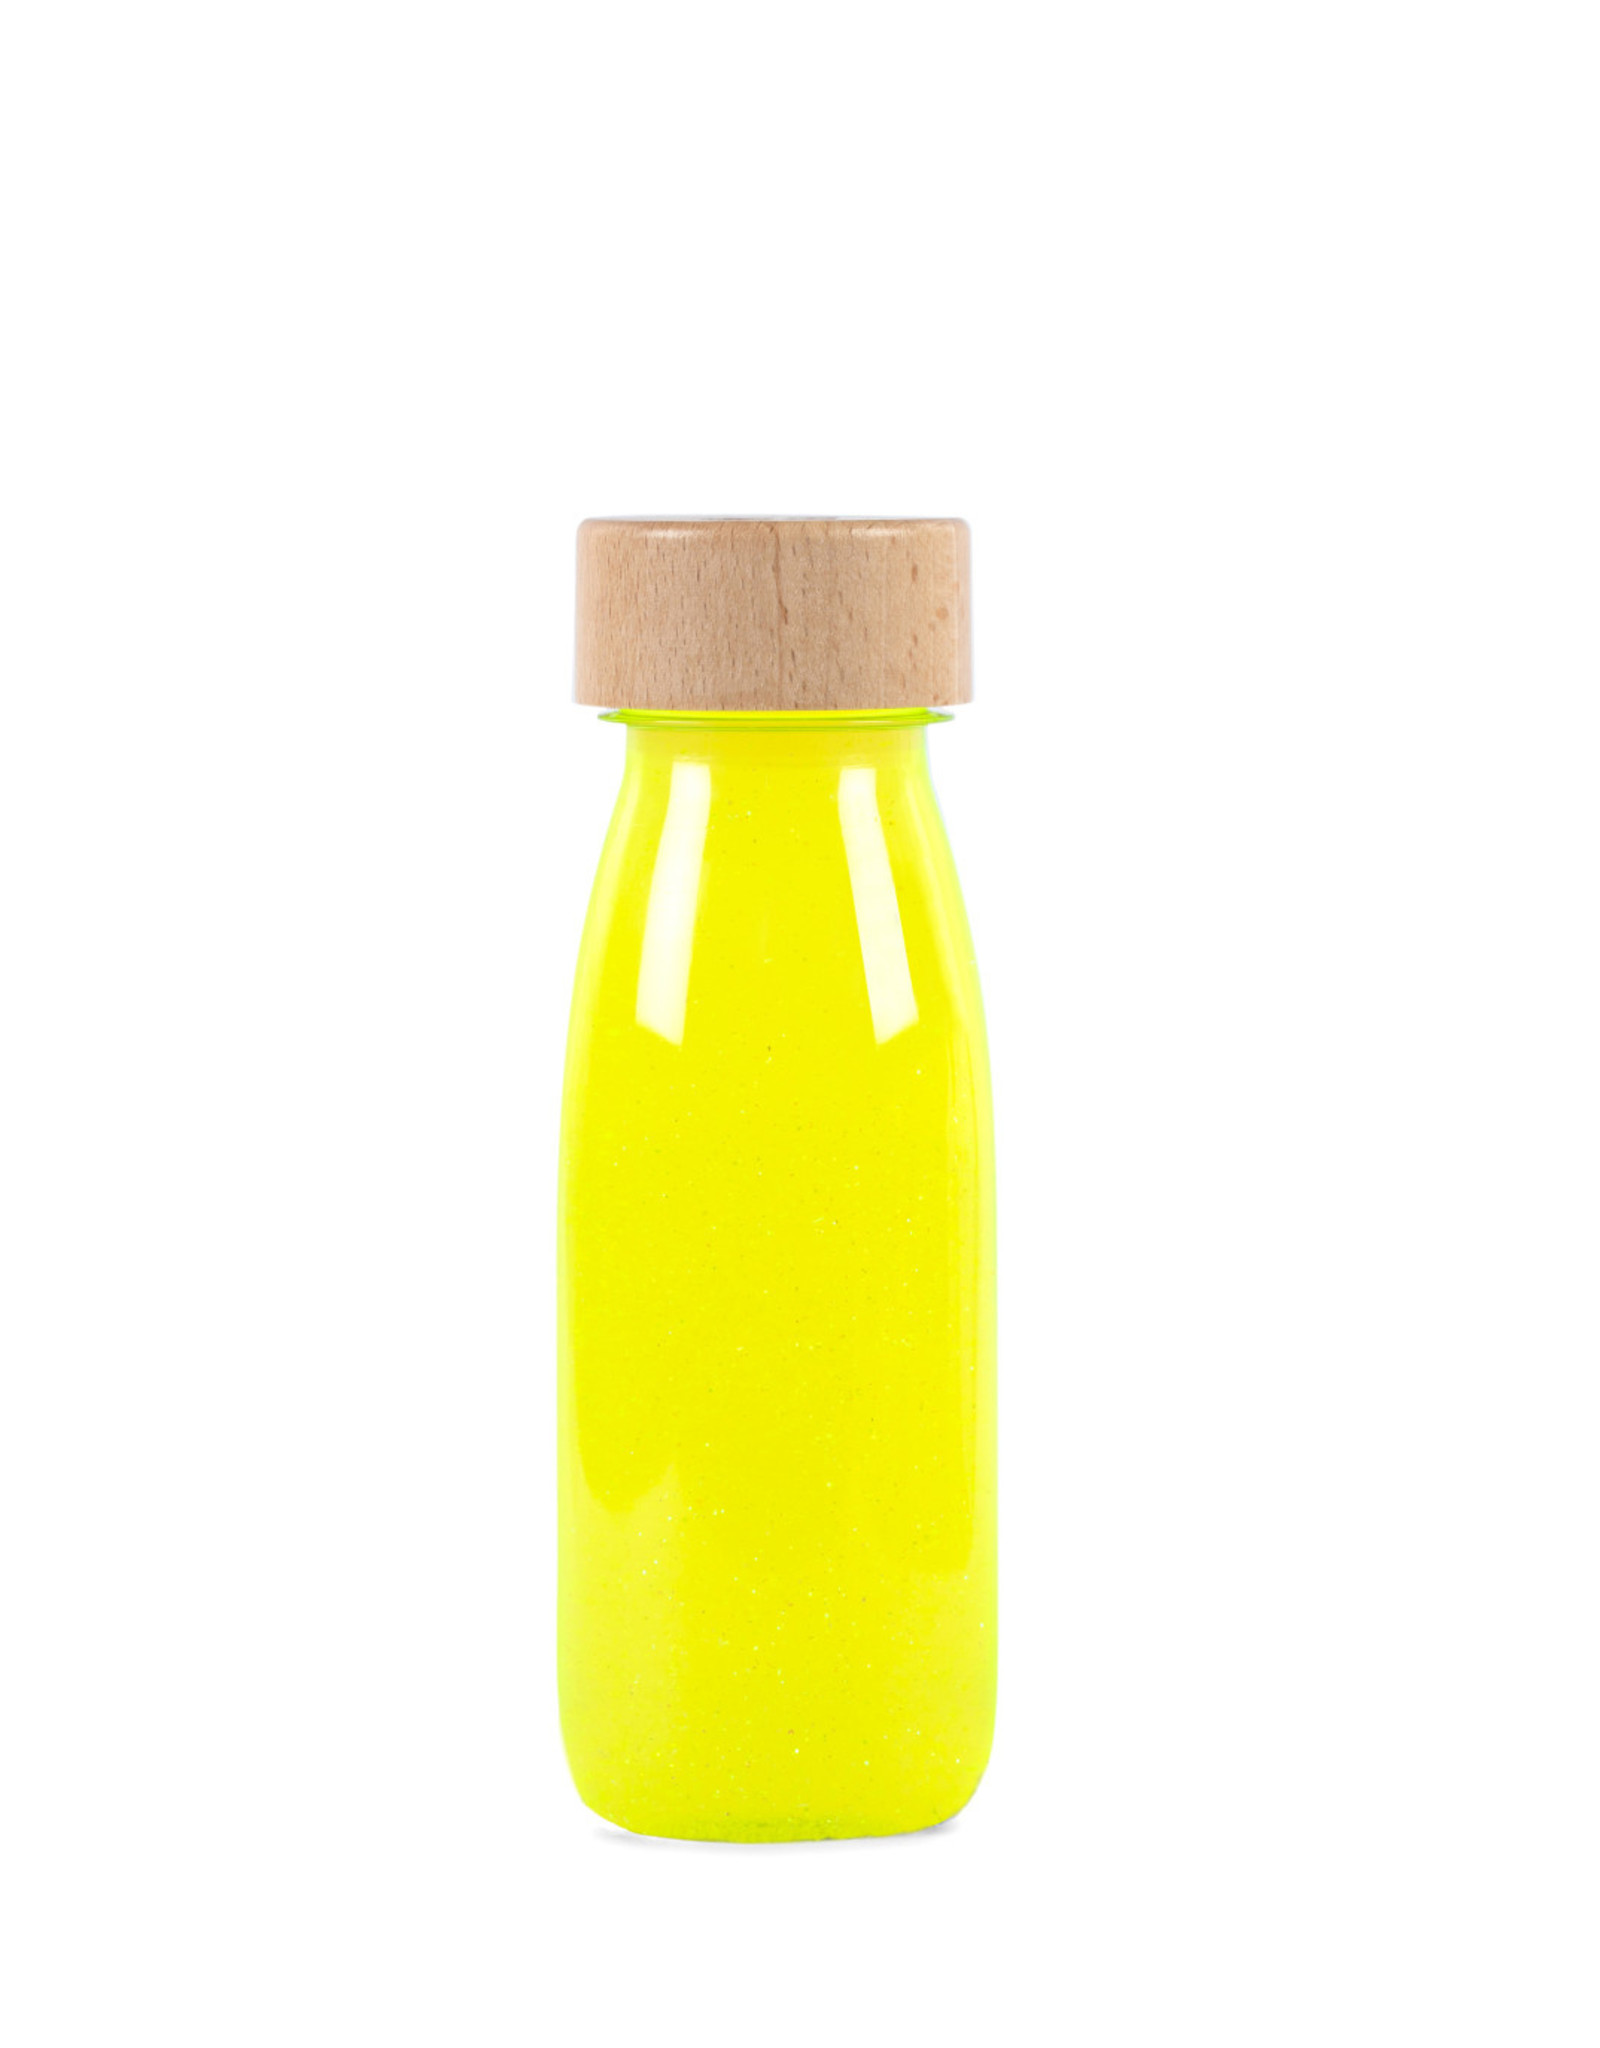 Petit Boum Float Bottle Yellow Fluo